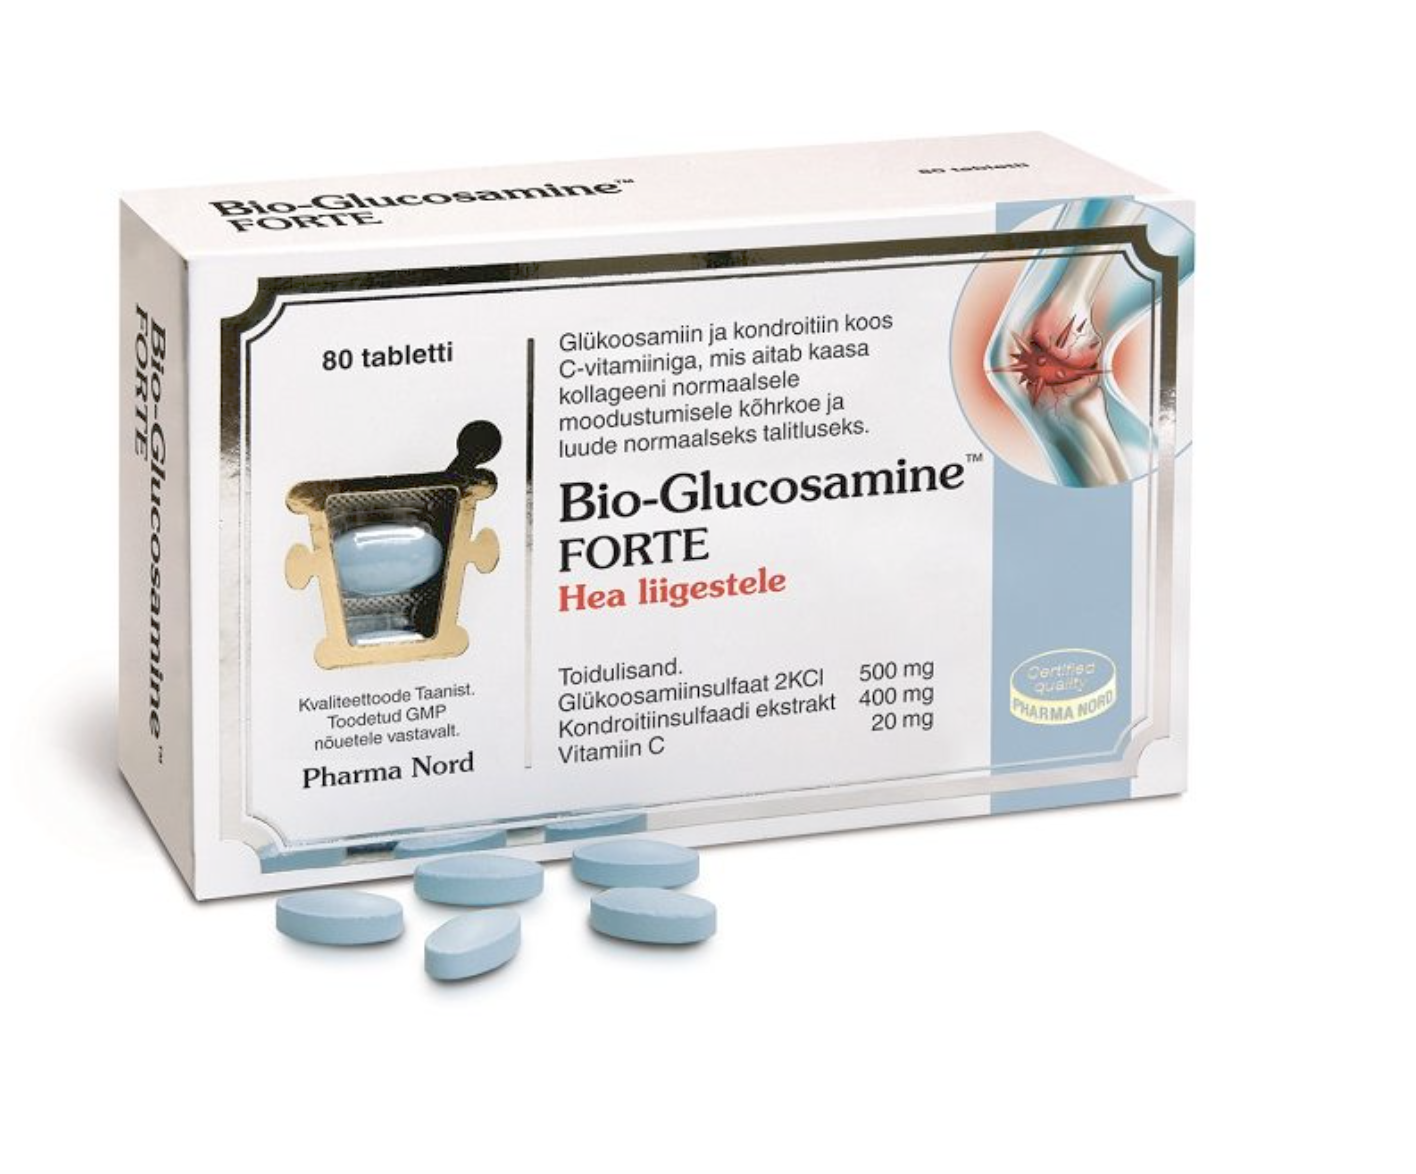 Glukoosamiini kondroitiini hind apteegis Osta norkus uimasus valu liigestes